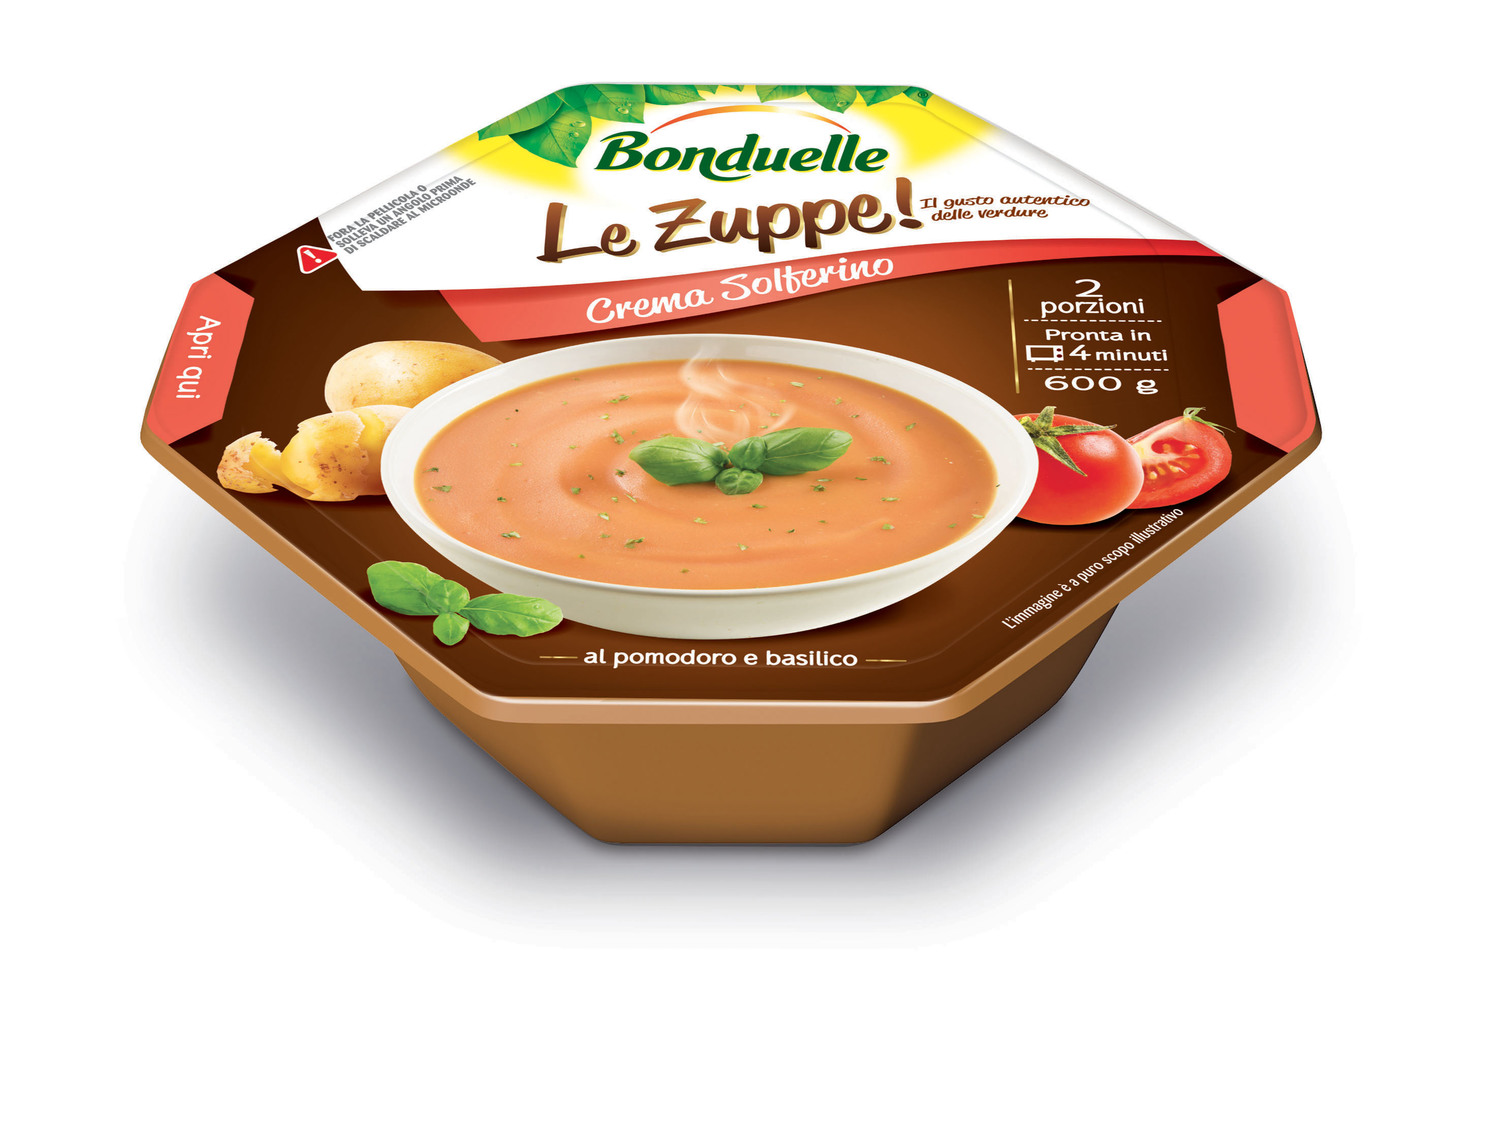  Bonduelle lancia la nuova linea: Le Zuppe! Il gusto autentico delle verdure